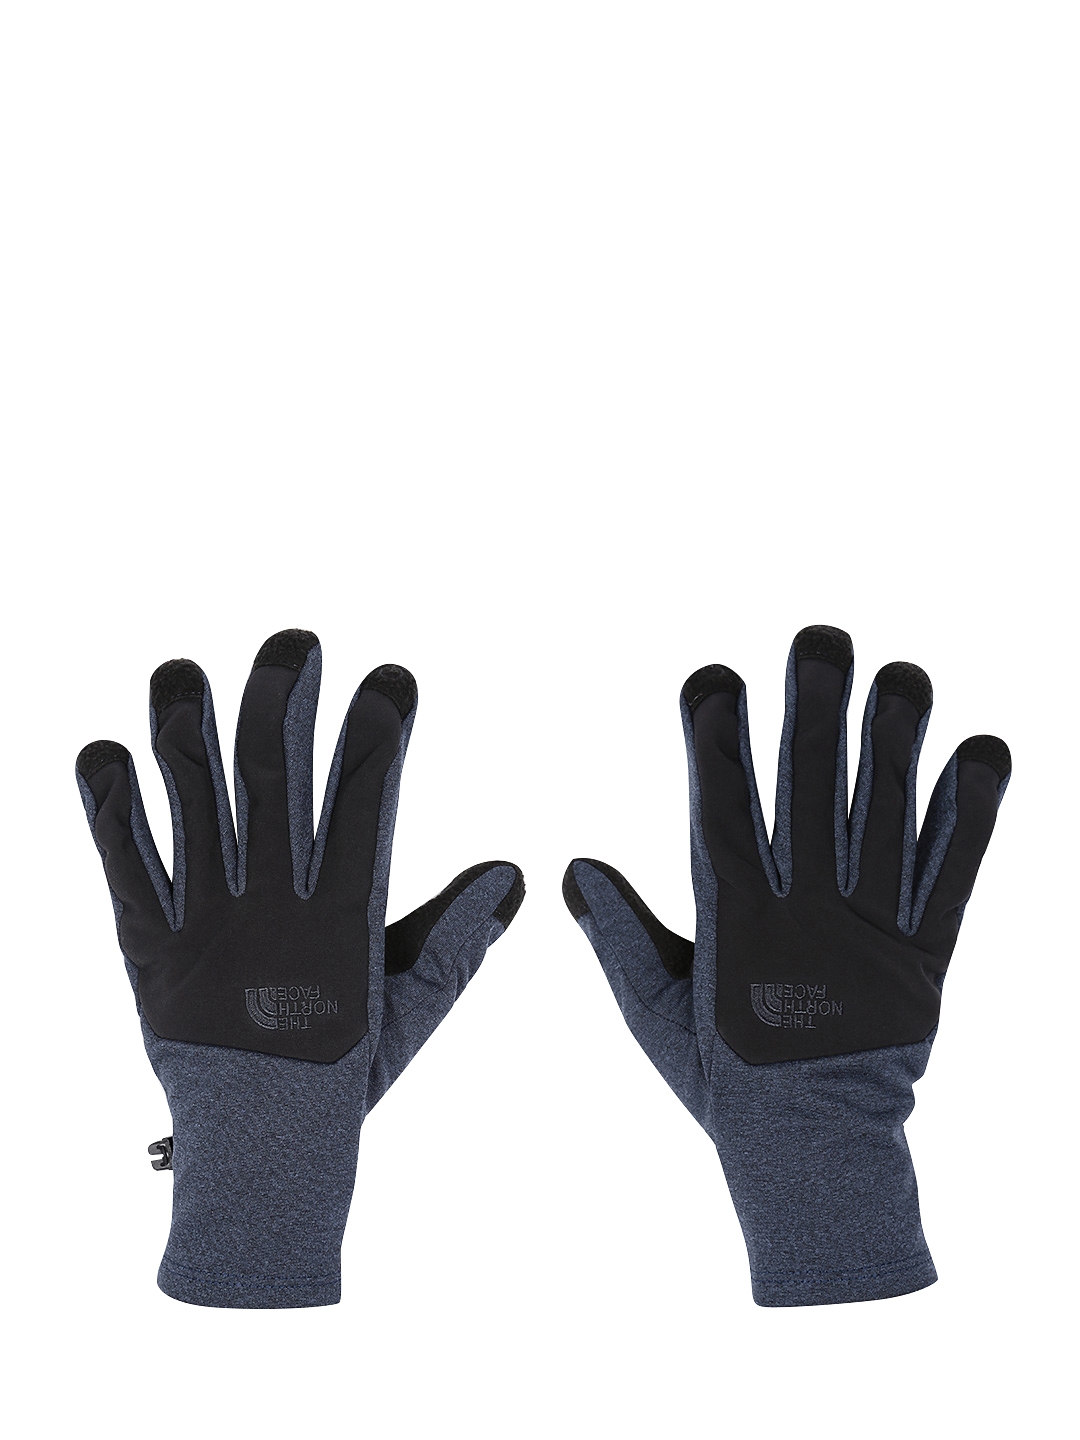 navy north face gloves